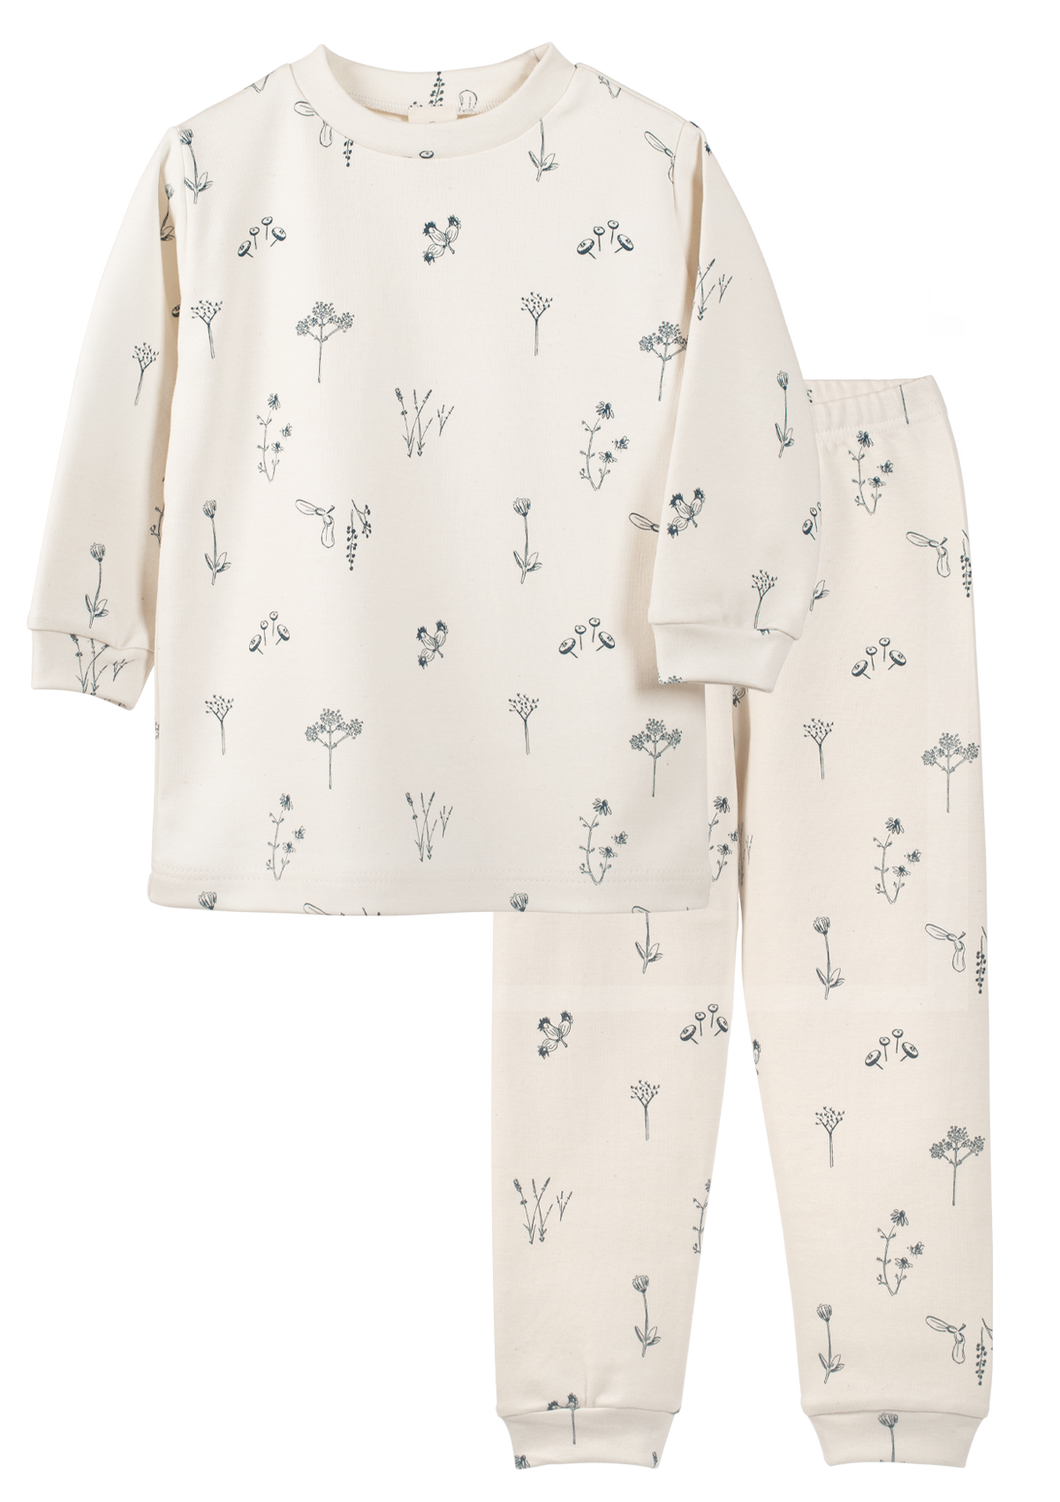 Plant image on organic cotton kids pajamas